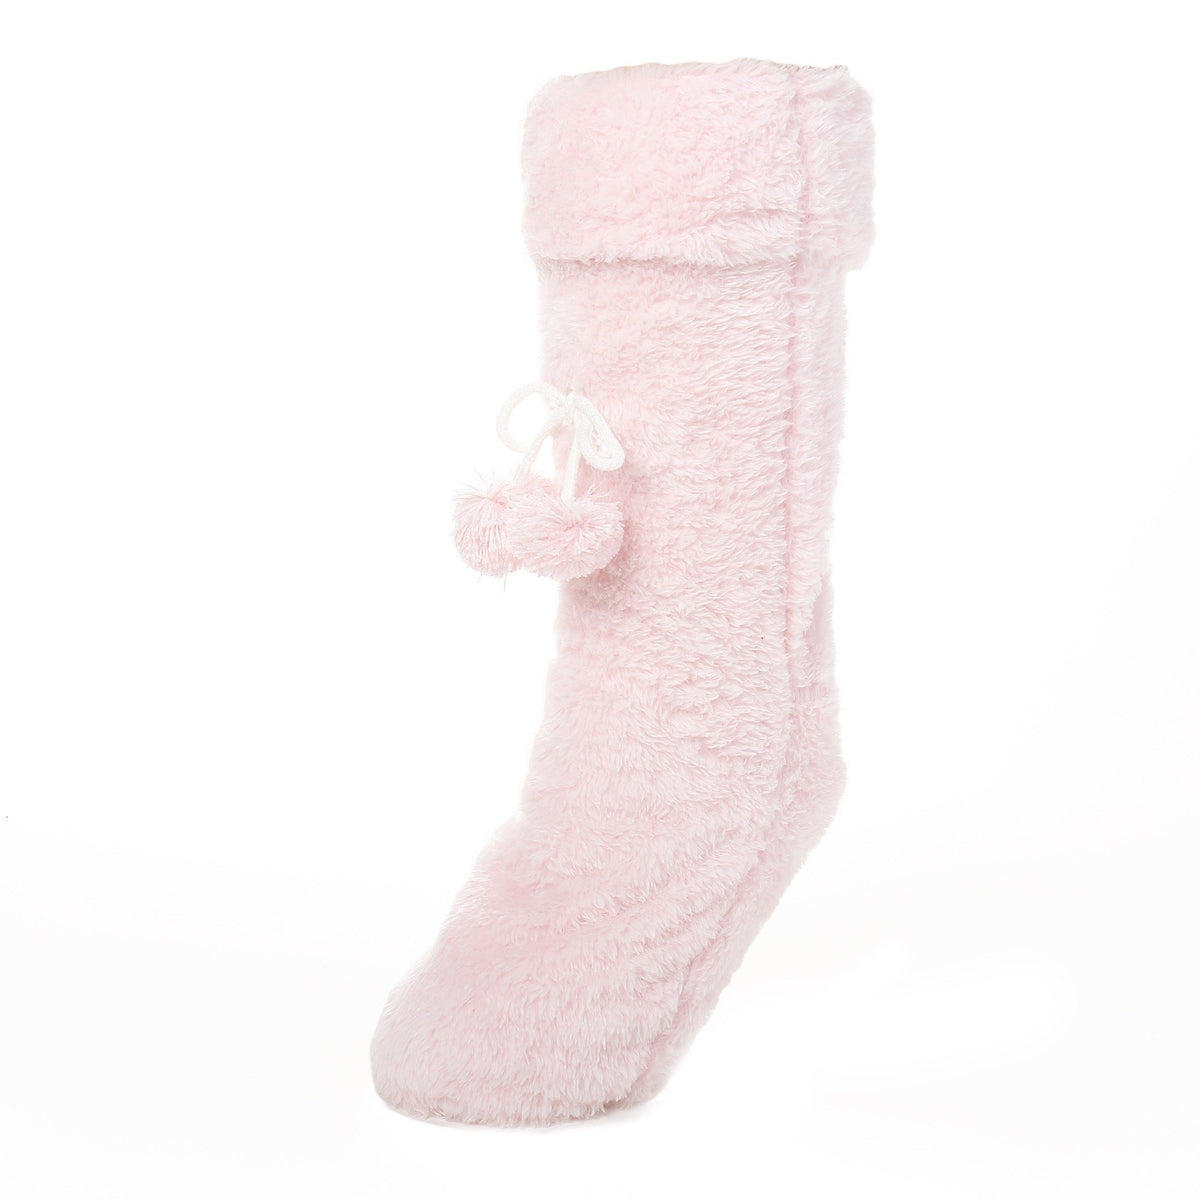 Women's Fuzzy Plush Tall Slipper Socks with Pom-Poms - Pink